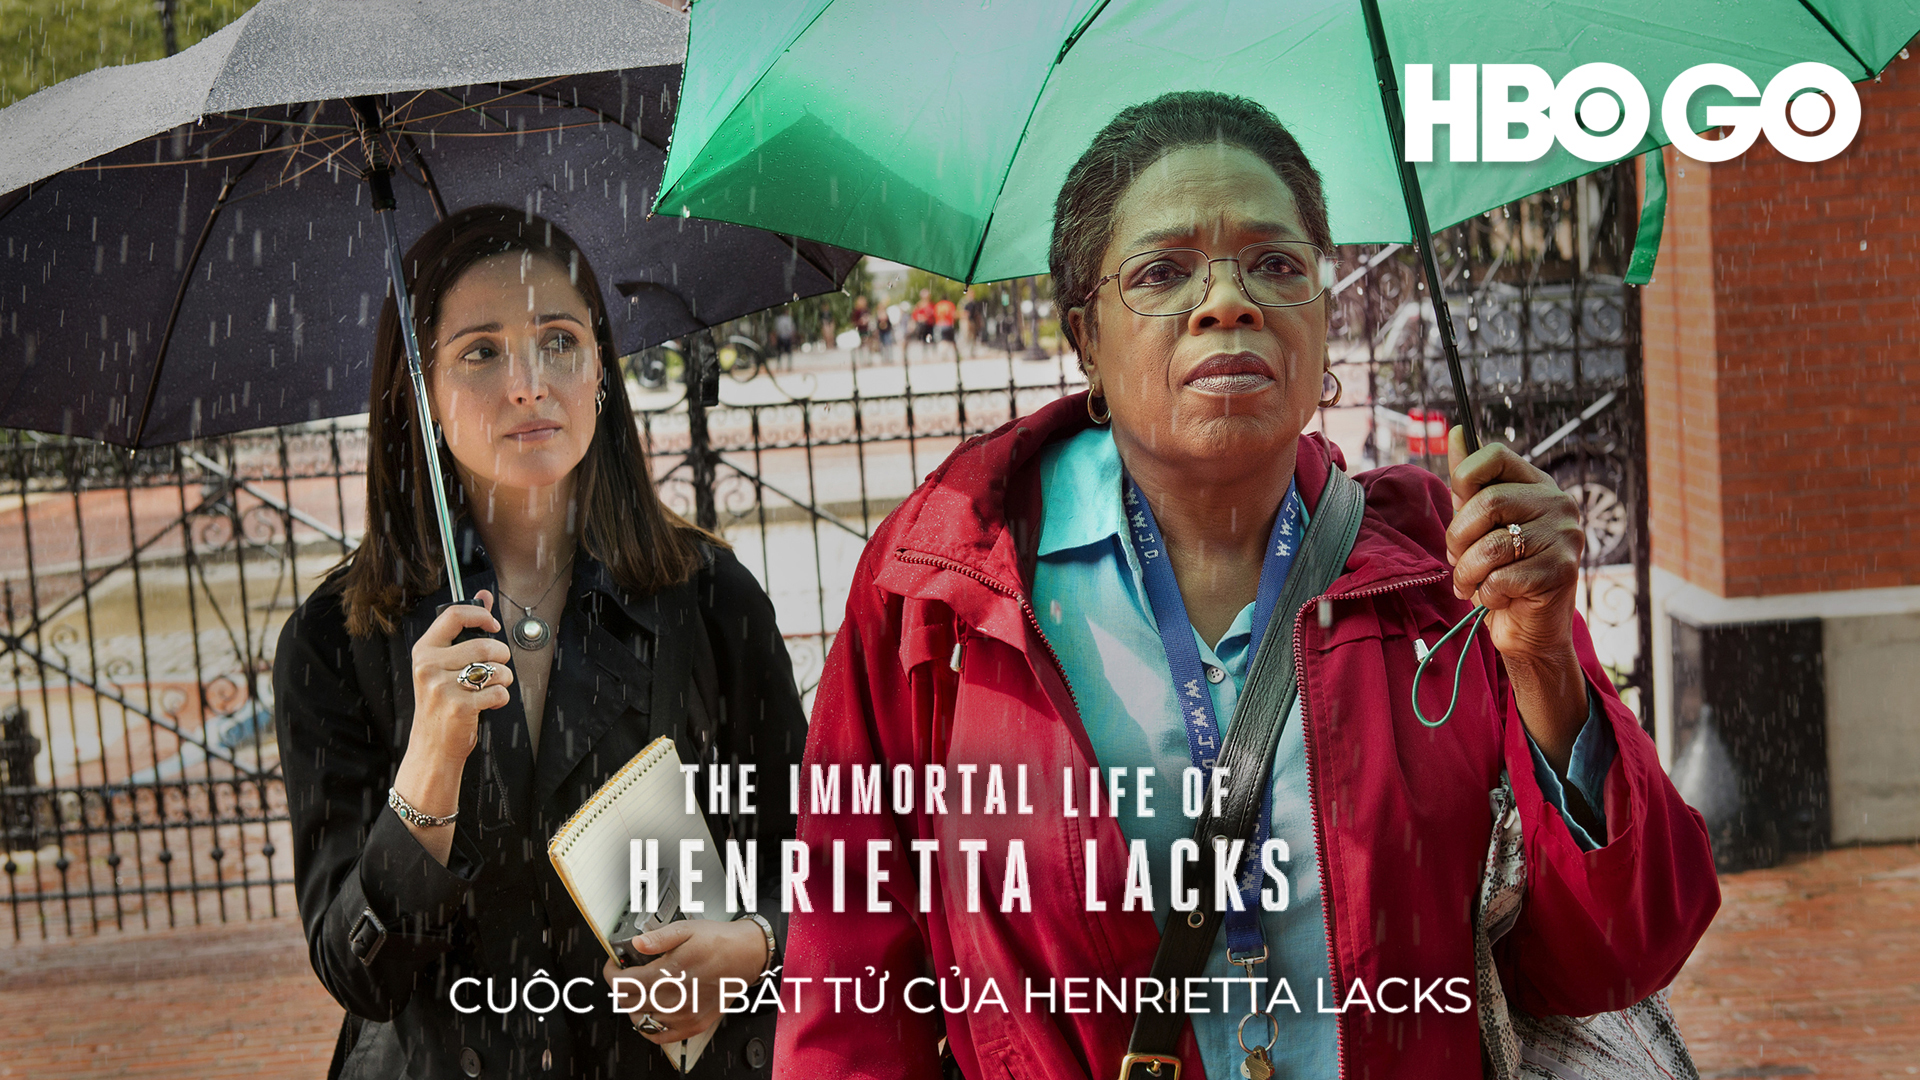 51. Phim The Immortal Life of Henrietta Lacks - Cuộc đời bất diệt của Henrietta Lacks